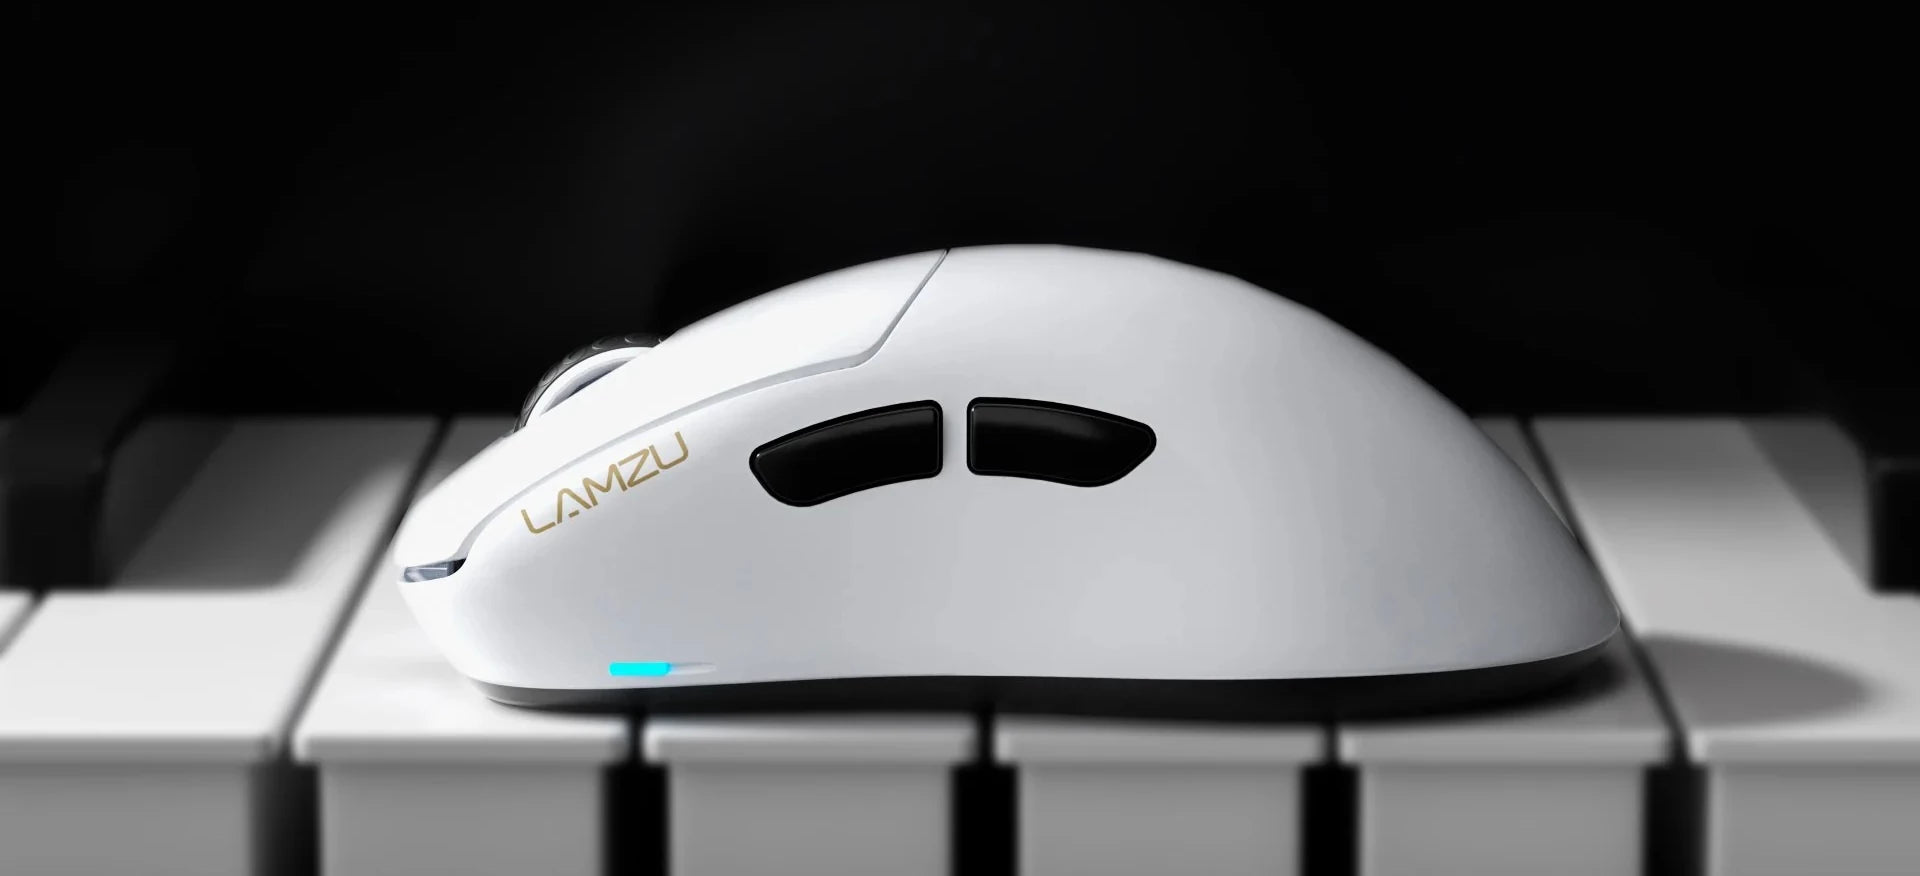 Lamzu Gaming Mice